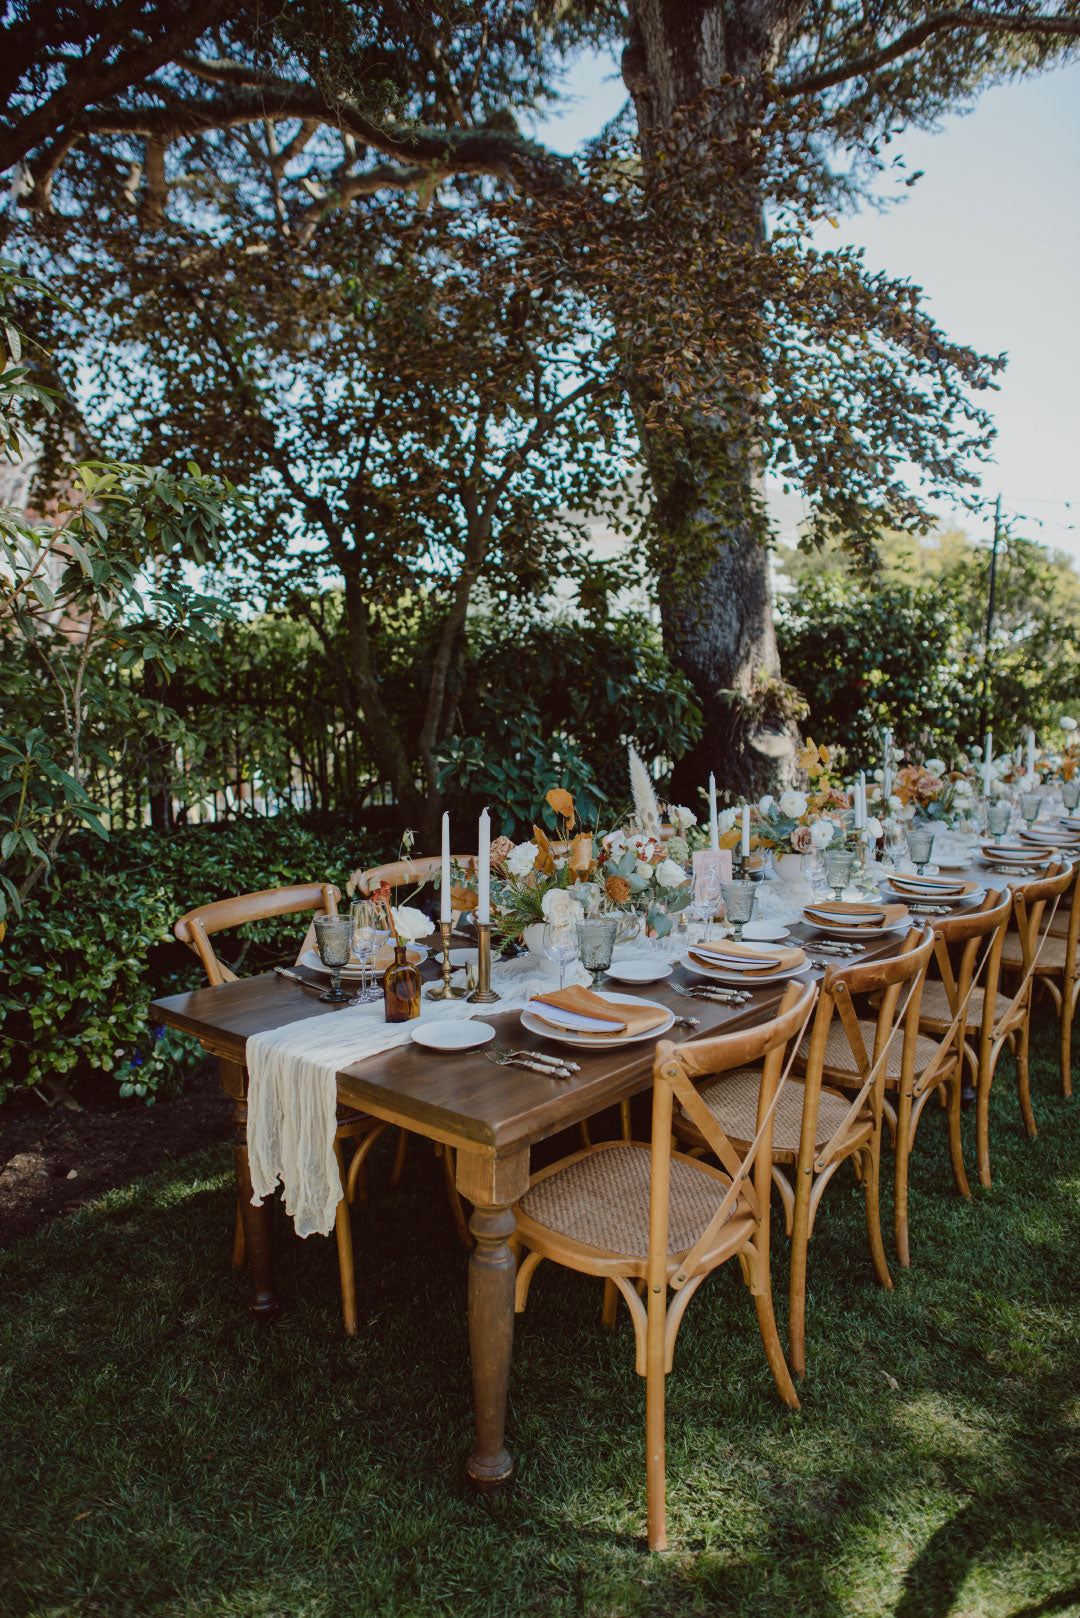 Wedding table setting in yard